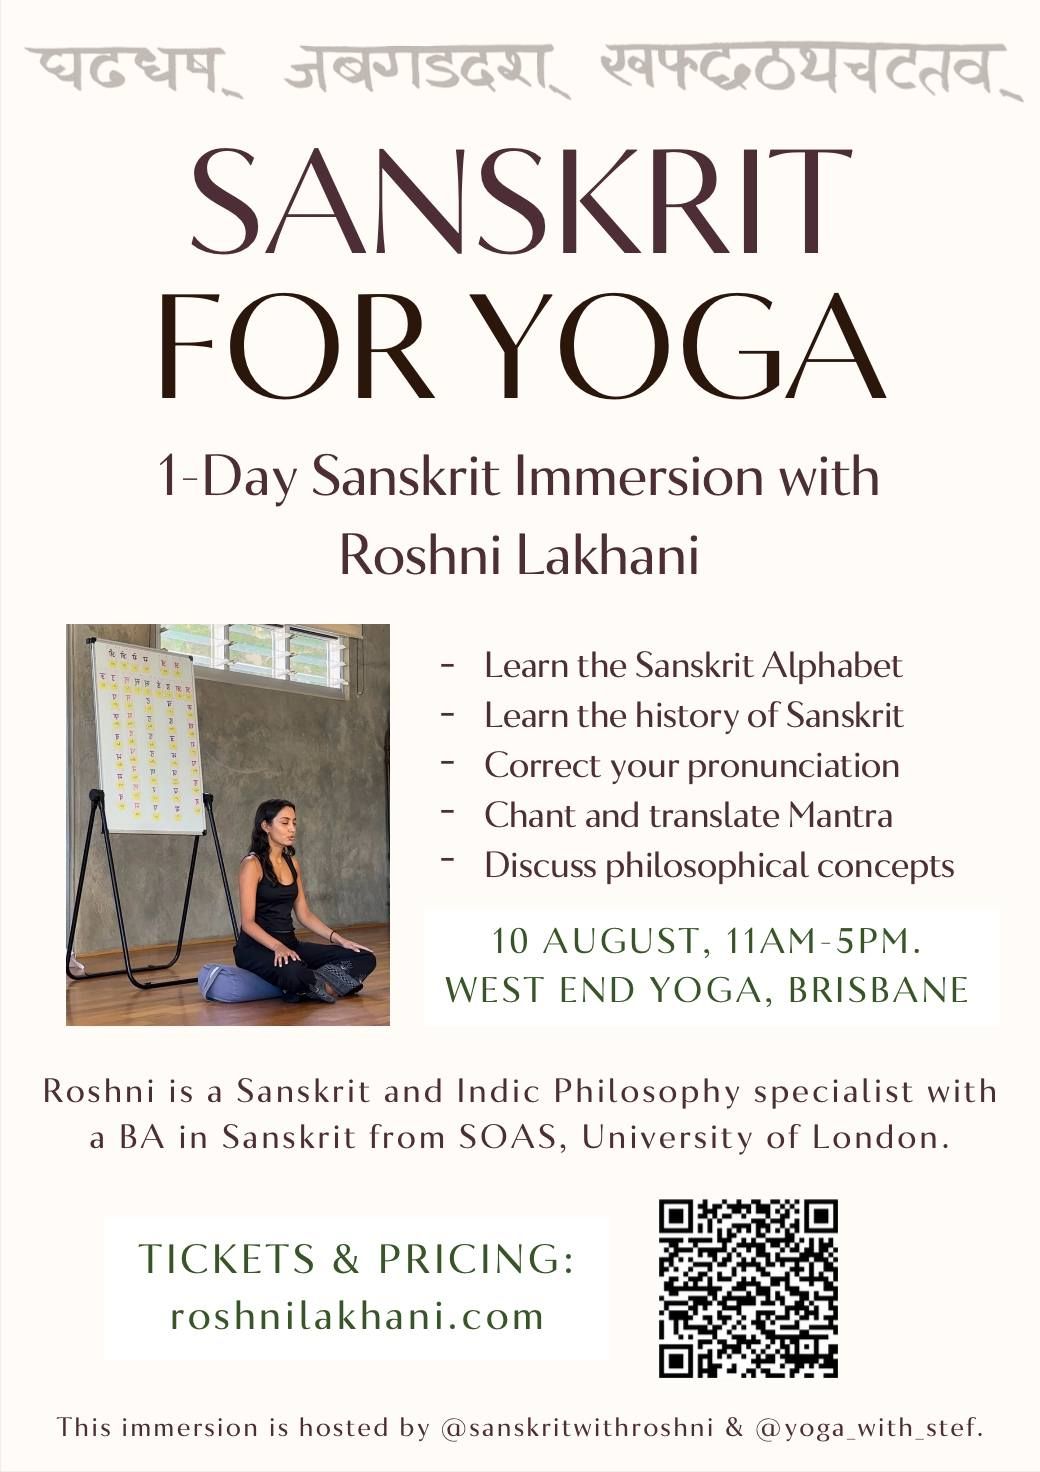 SANSKRIT FOR YOGA: 1-Day Sanskrit Immersion with Roshni Lakhani